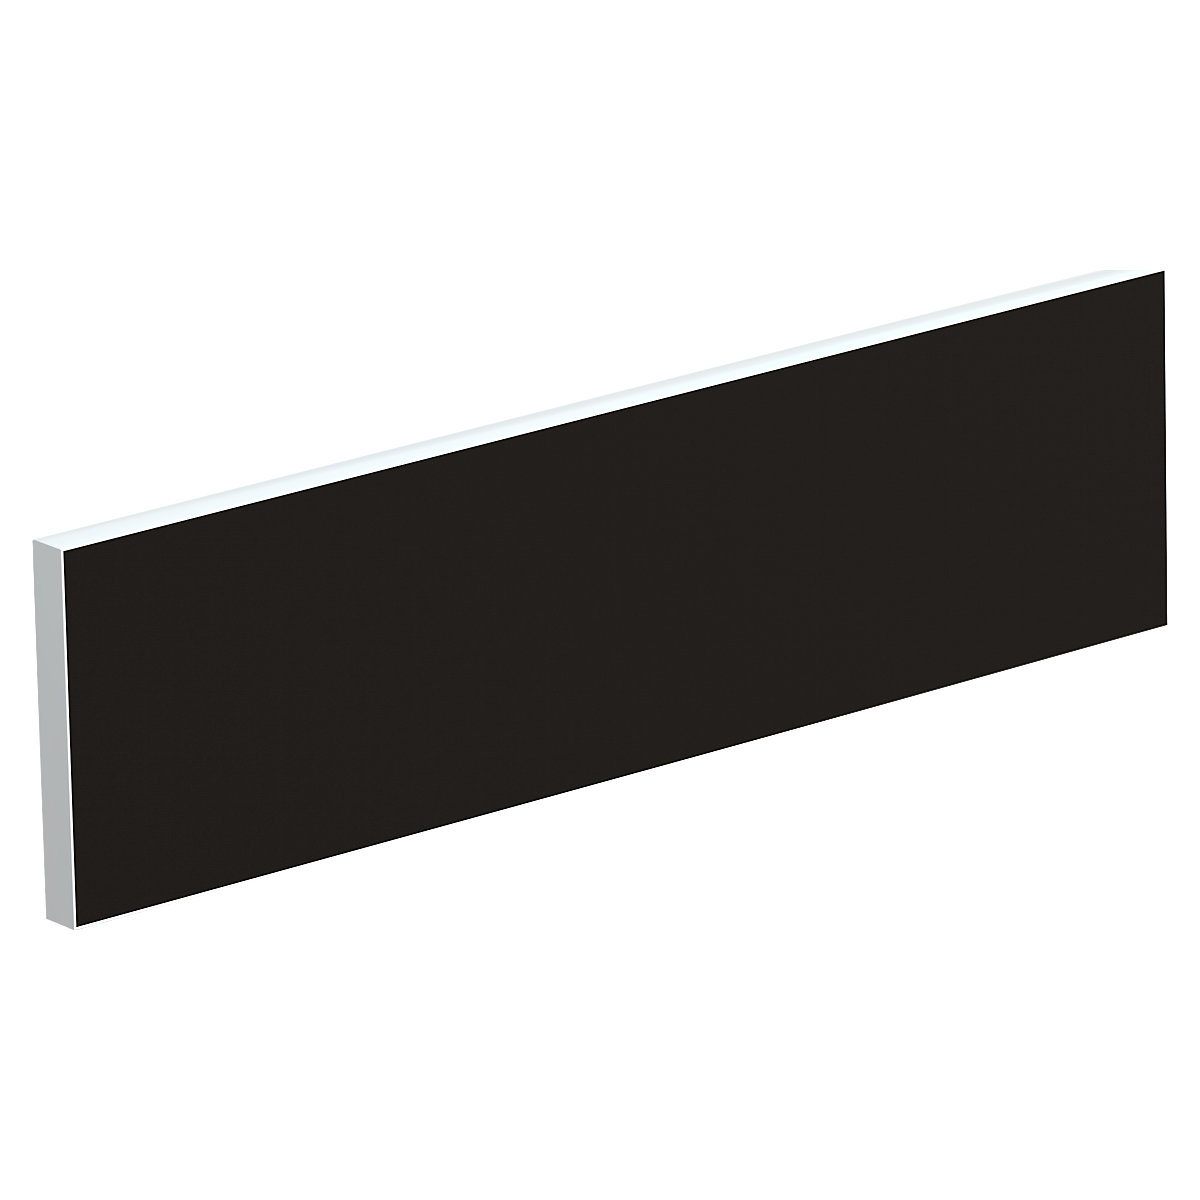 Tischtrennwand für Teamschreibtische, Breite 1200 mm, Bezug schwarz-7